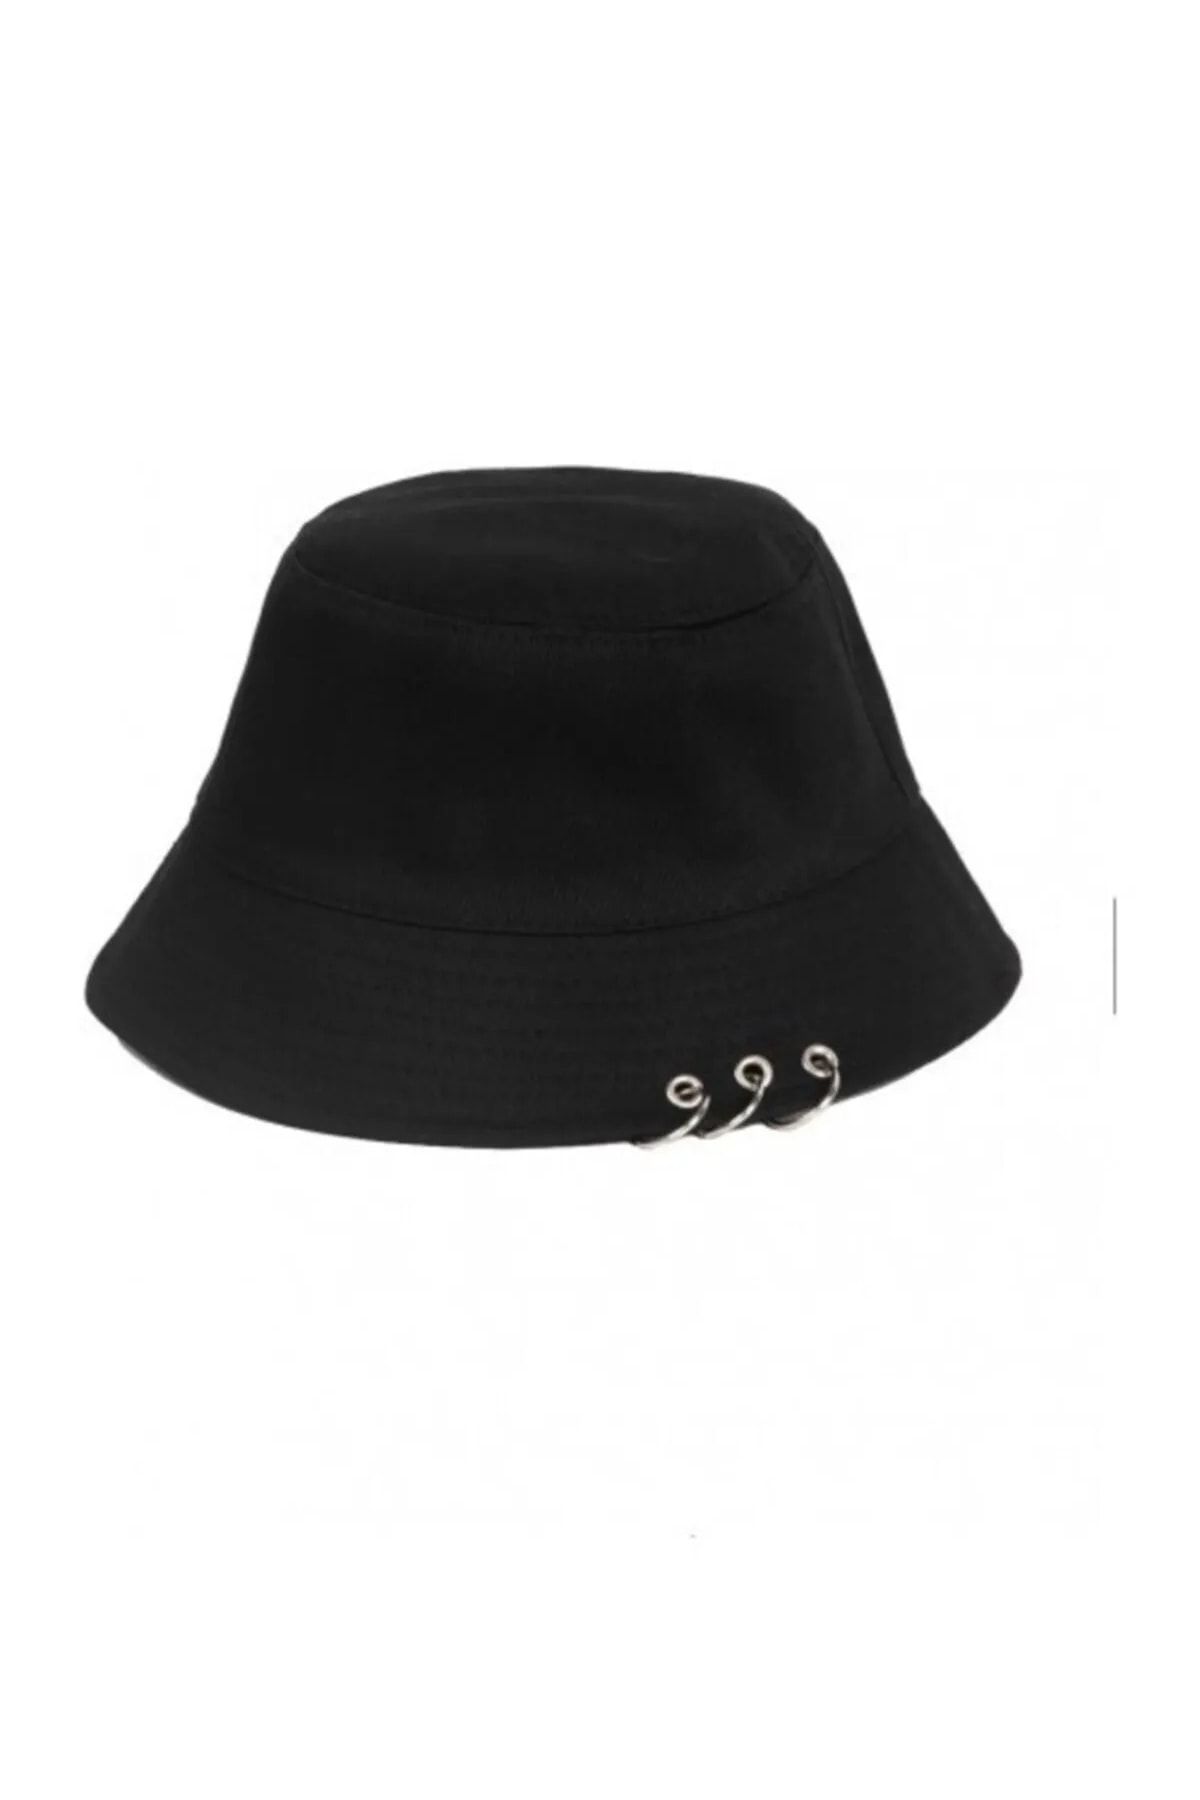 Betülce Unisex 3 Halkalı Siyah Piercing Balıkçı Bucket Şapka Kadın Erkek